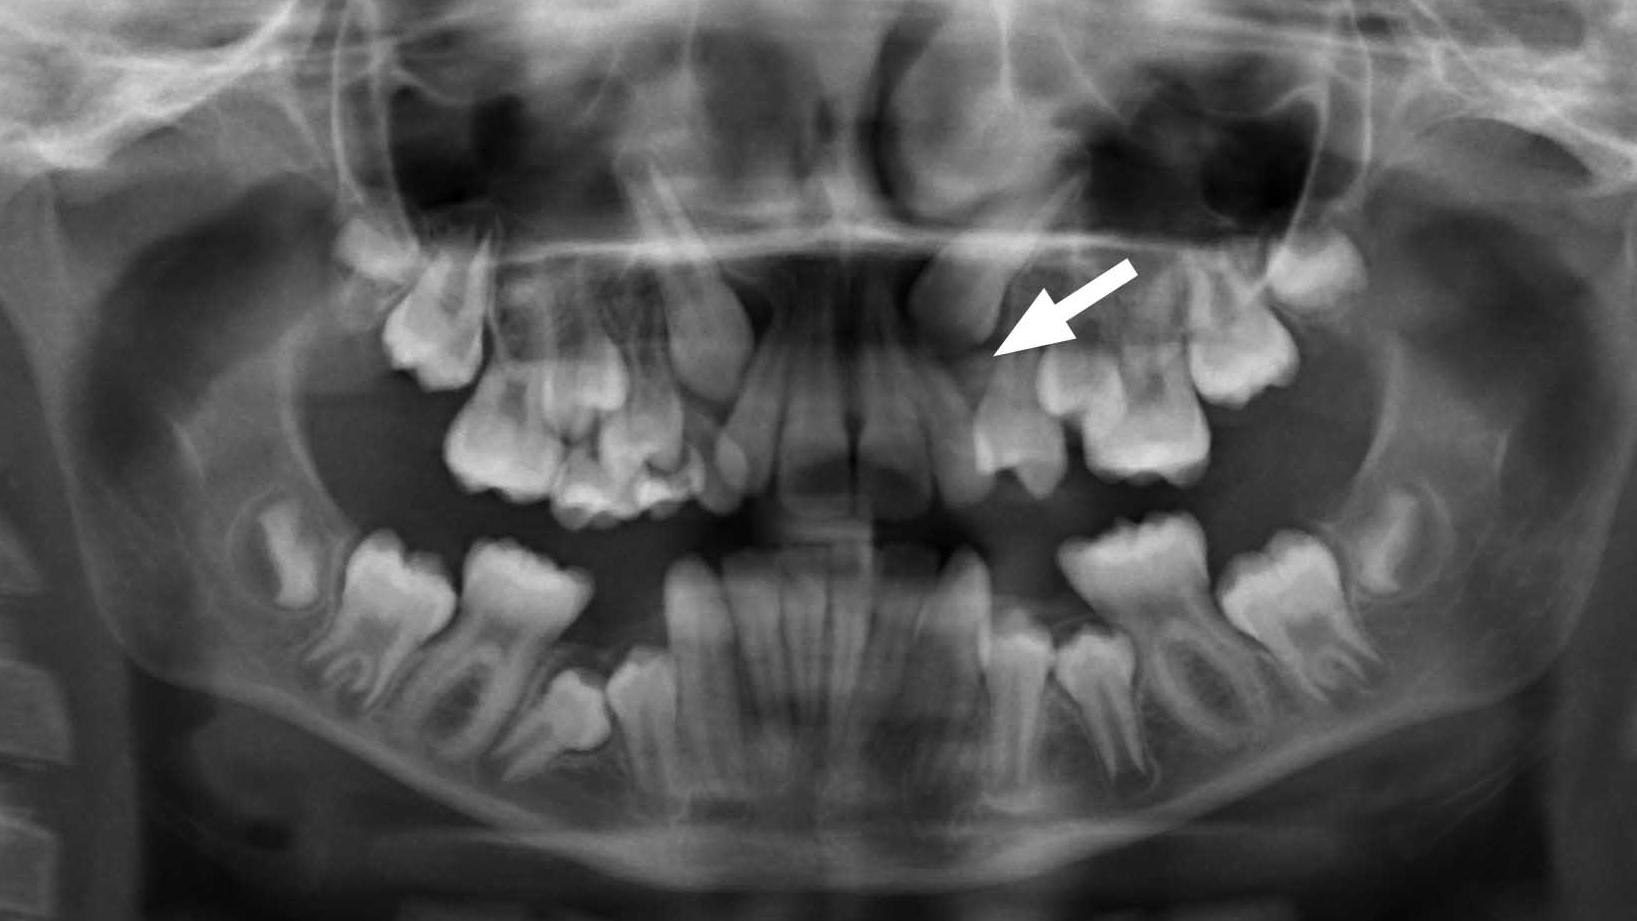 Röntgenbild von Zähnen mit Platzmangel